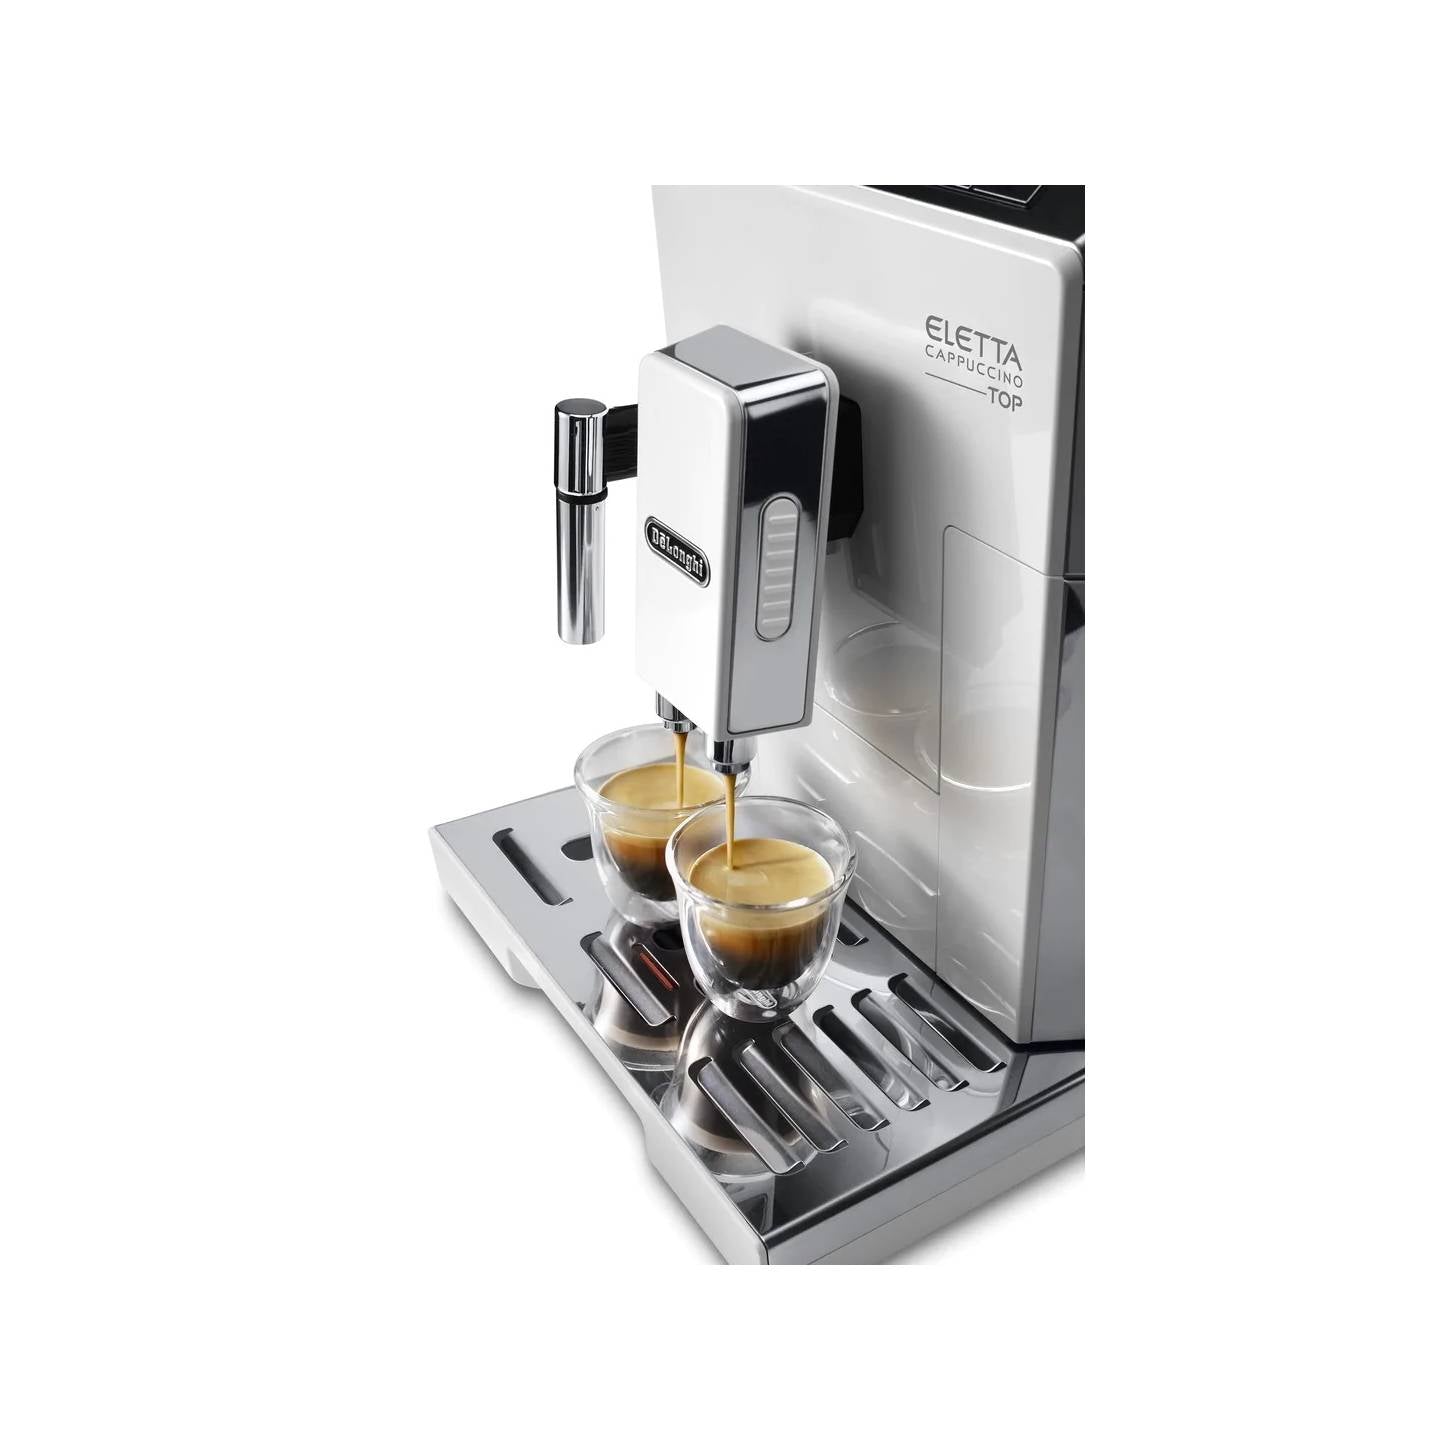 Delonghi Eletta Cappuccino Top Automatic Coffee Machine